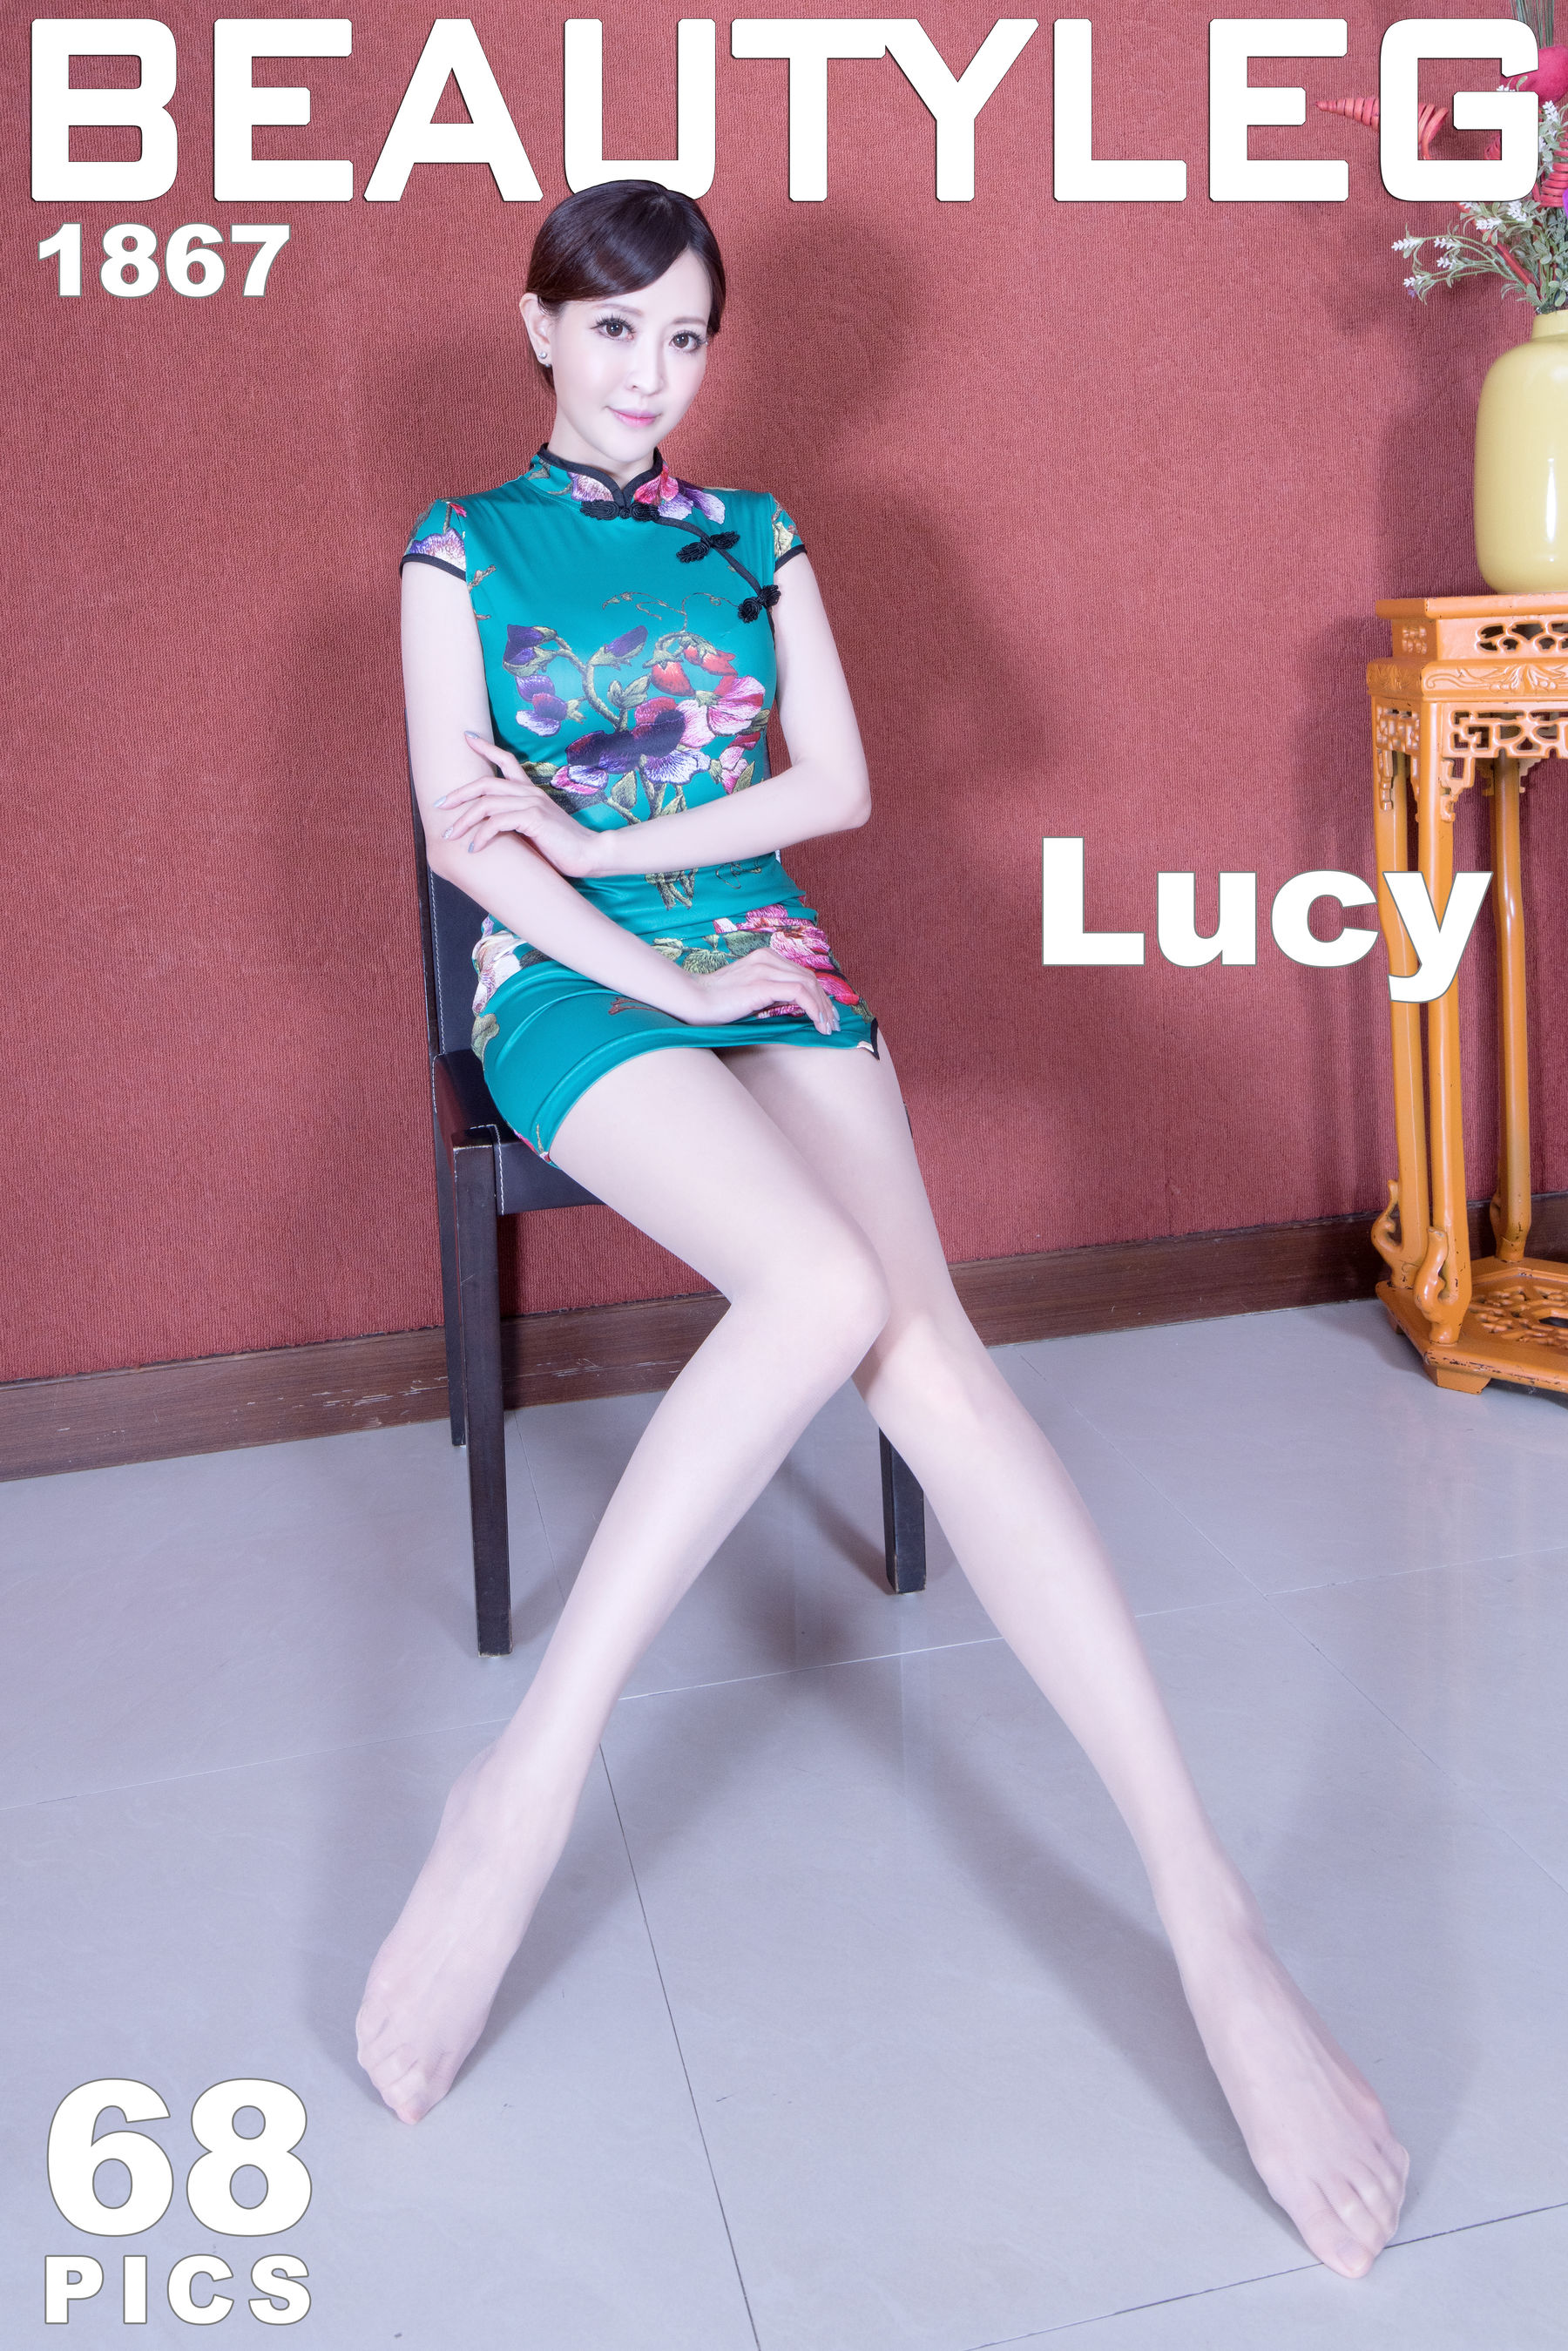 VOL.184 [Beautyleg]制服美腿旗袍:倪千凌(腿模Lucy,陈佳筠)超高清个人性感漂亮大图(68P)